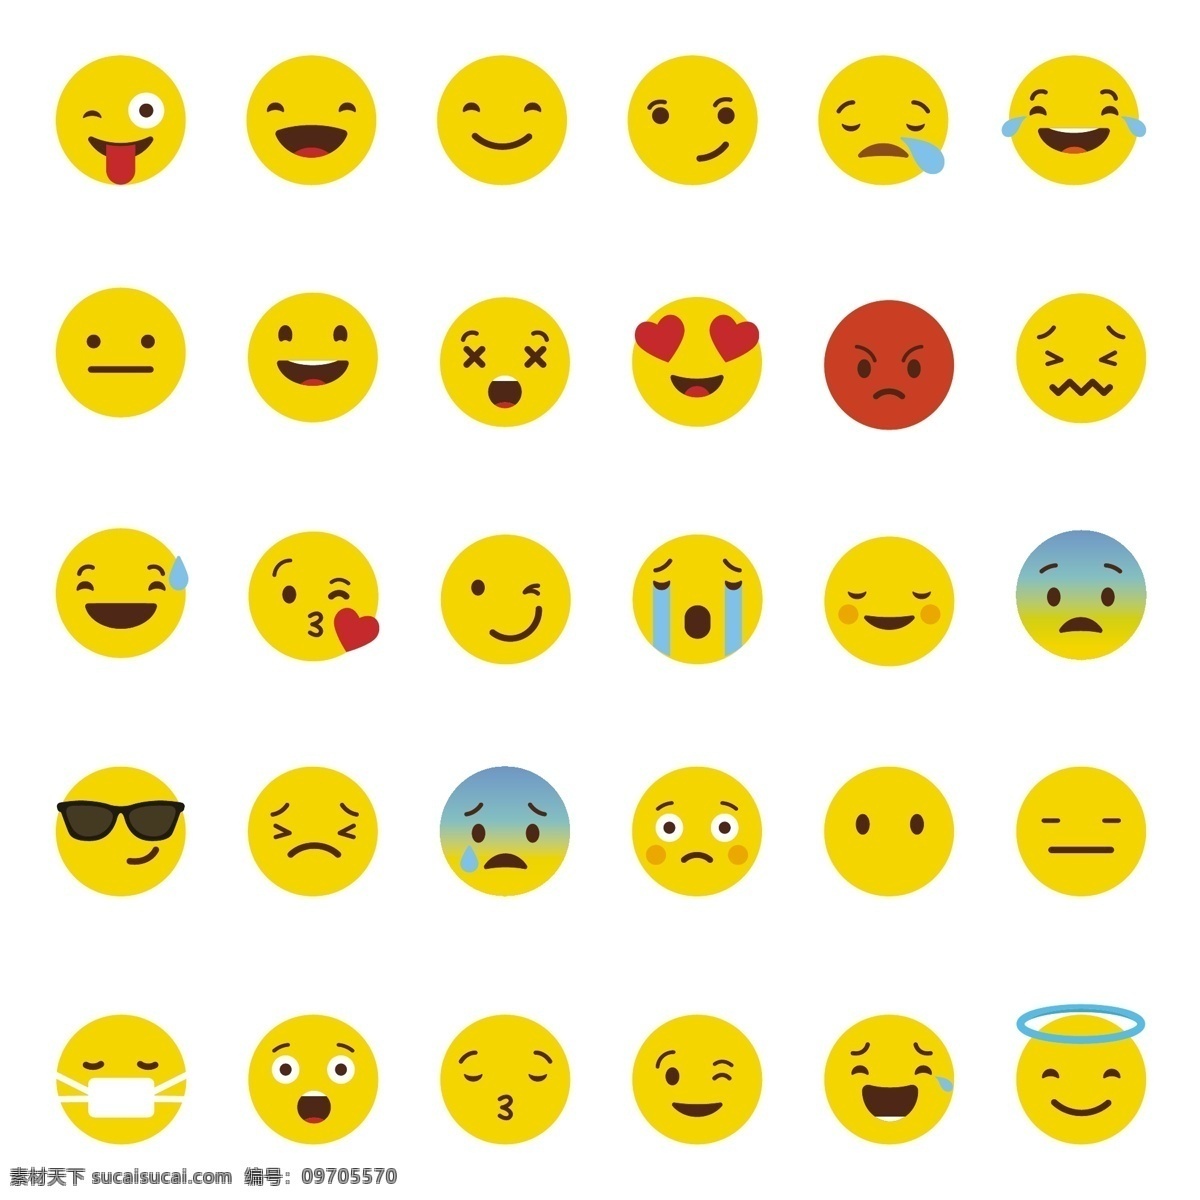 表情包矢量 表情包 emoji 表情图标 表情标志 表情 共享设计矢量 标志图标 其他图标